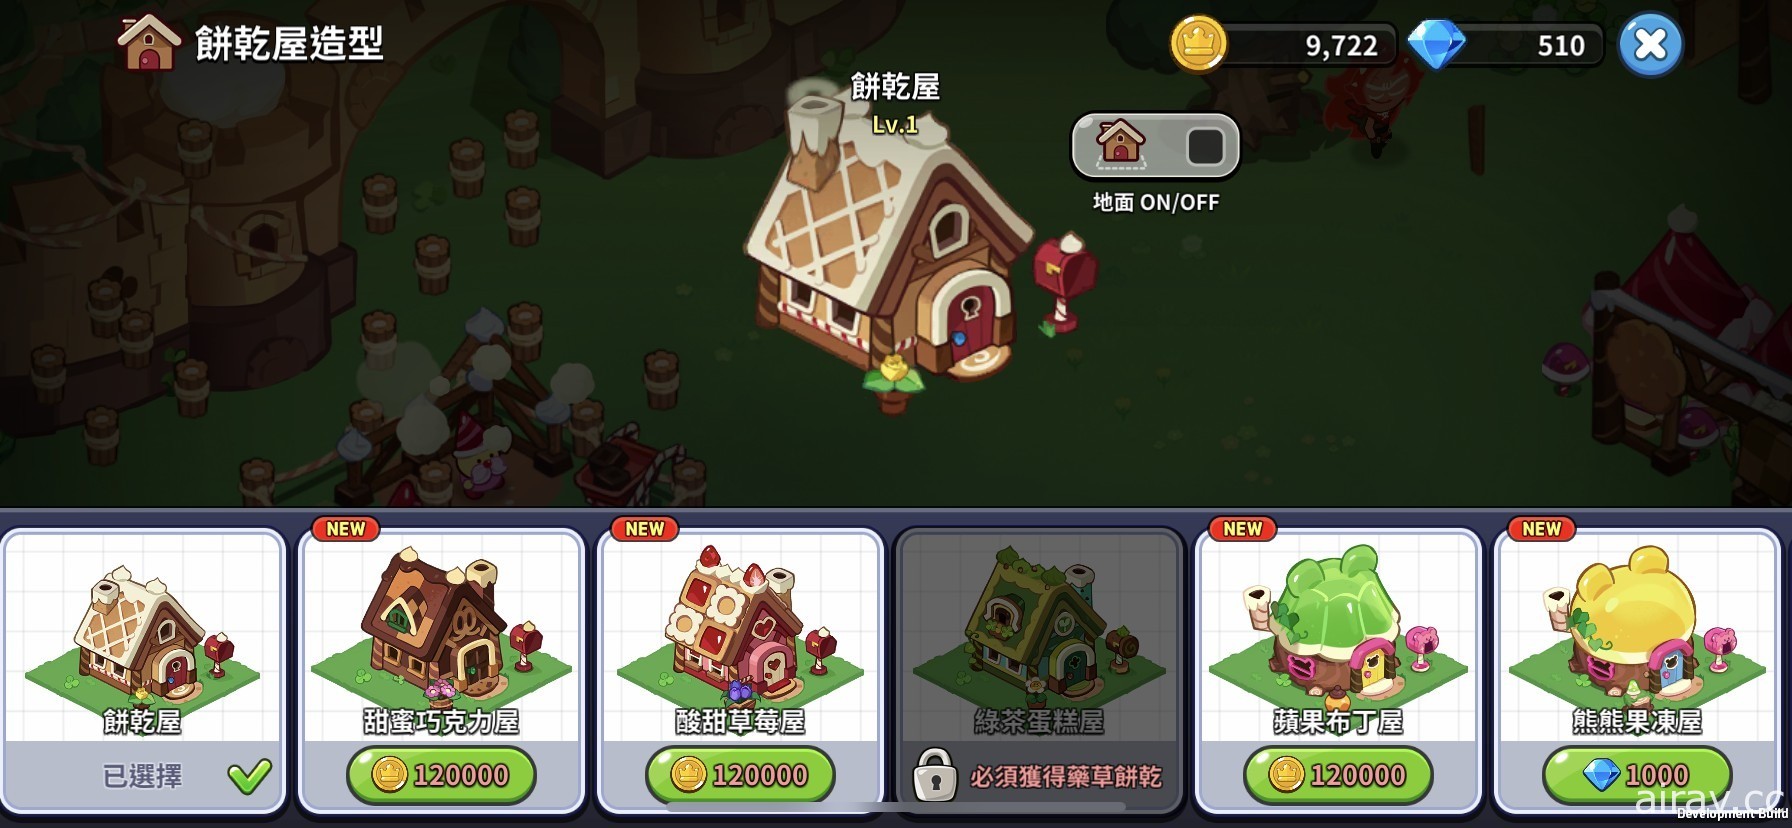 《薑餅人王國》推出限定改版活動 釋出「紫丁香餅乾」、餅乾屋自選造型功能